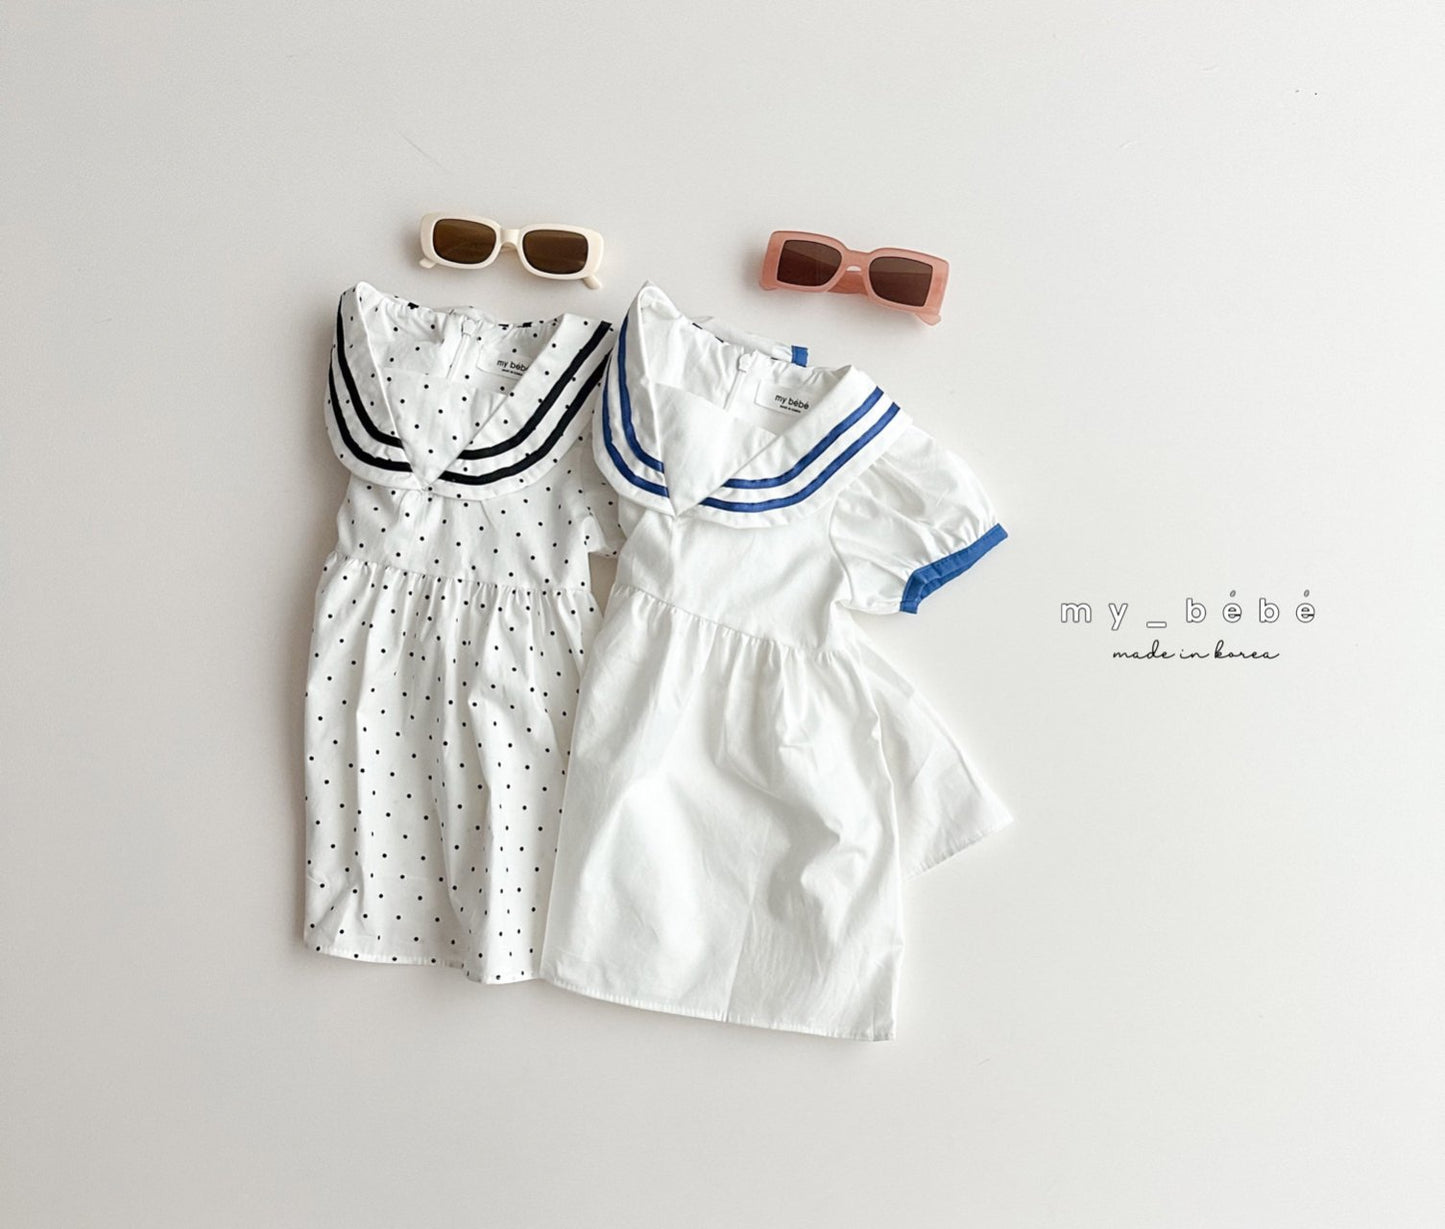 [My Bebe] Sailor Marin Dress